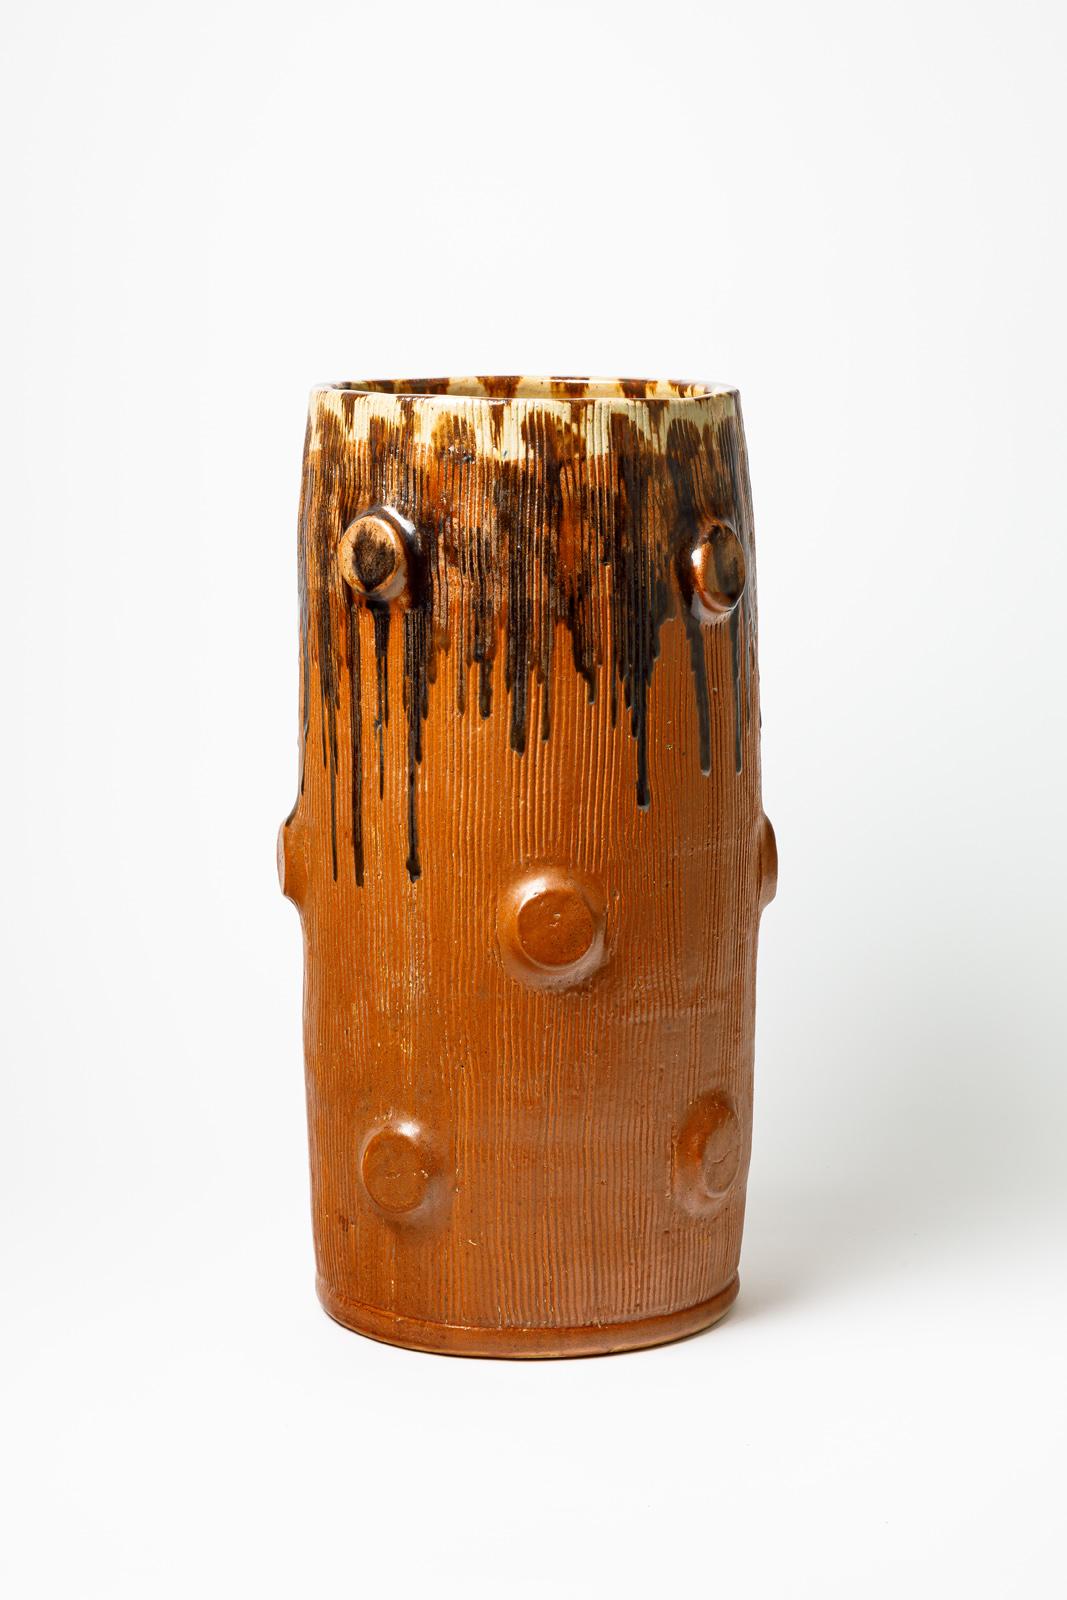 Vase en céramique émaillée orange et marron de Joseph Talbot.
Monogramme de l'Artistics sous la base. Vers 1940-1950.
H : 18.9' x 9.1' pouces.